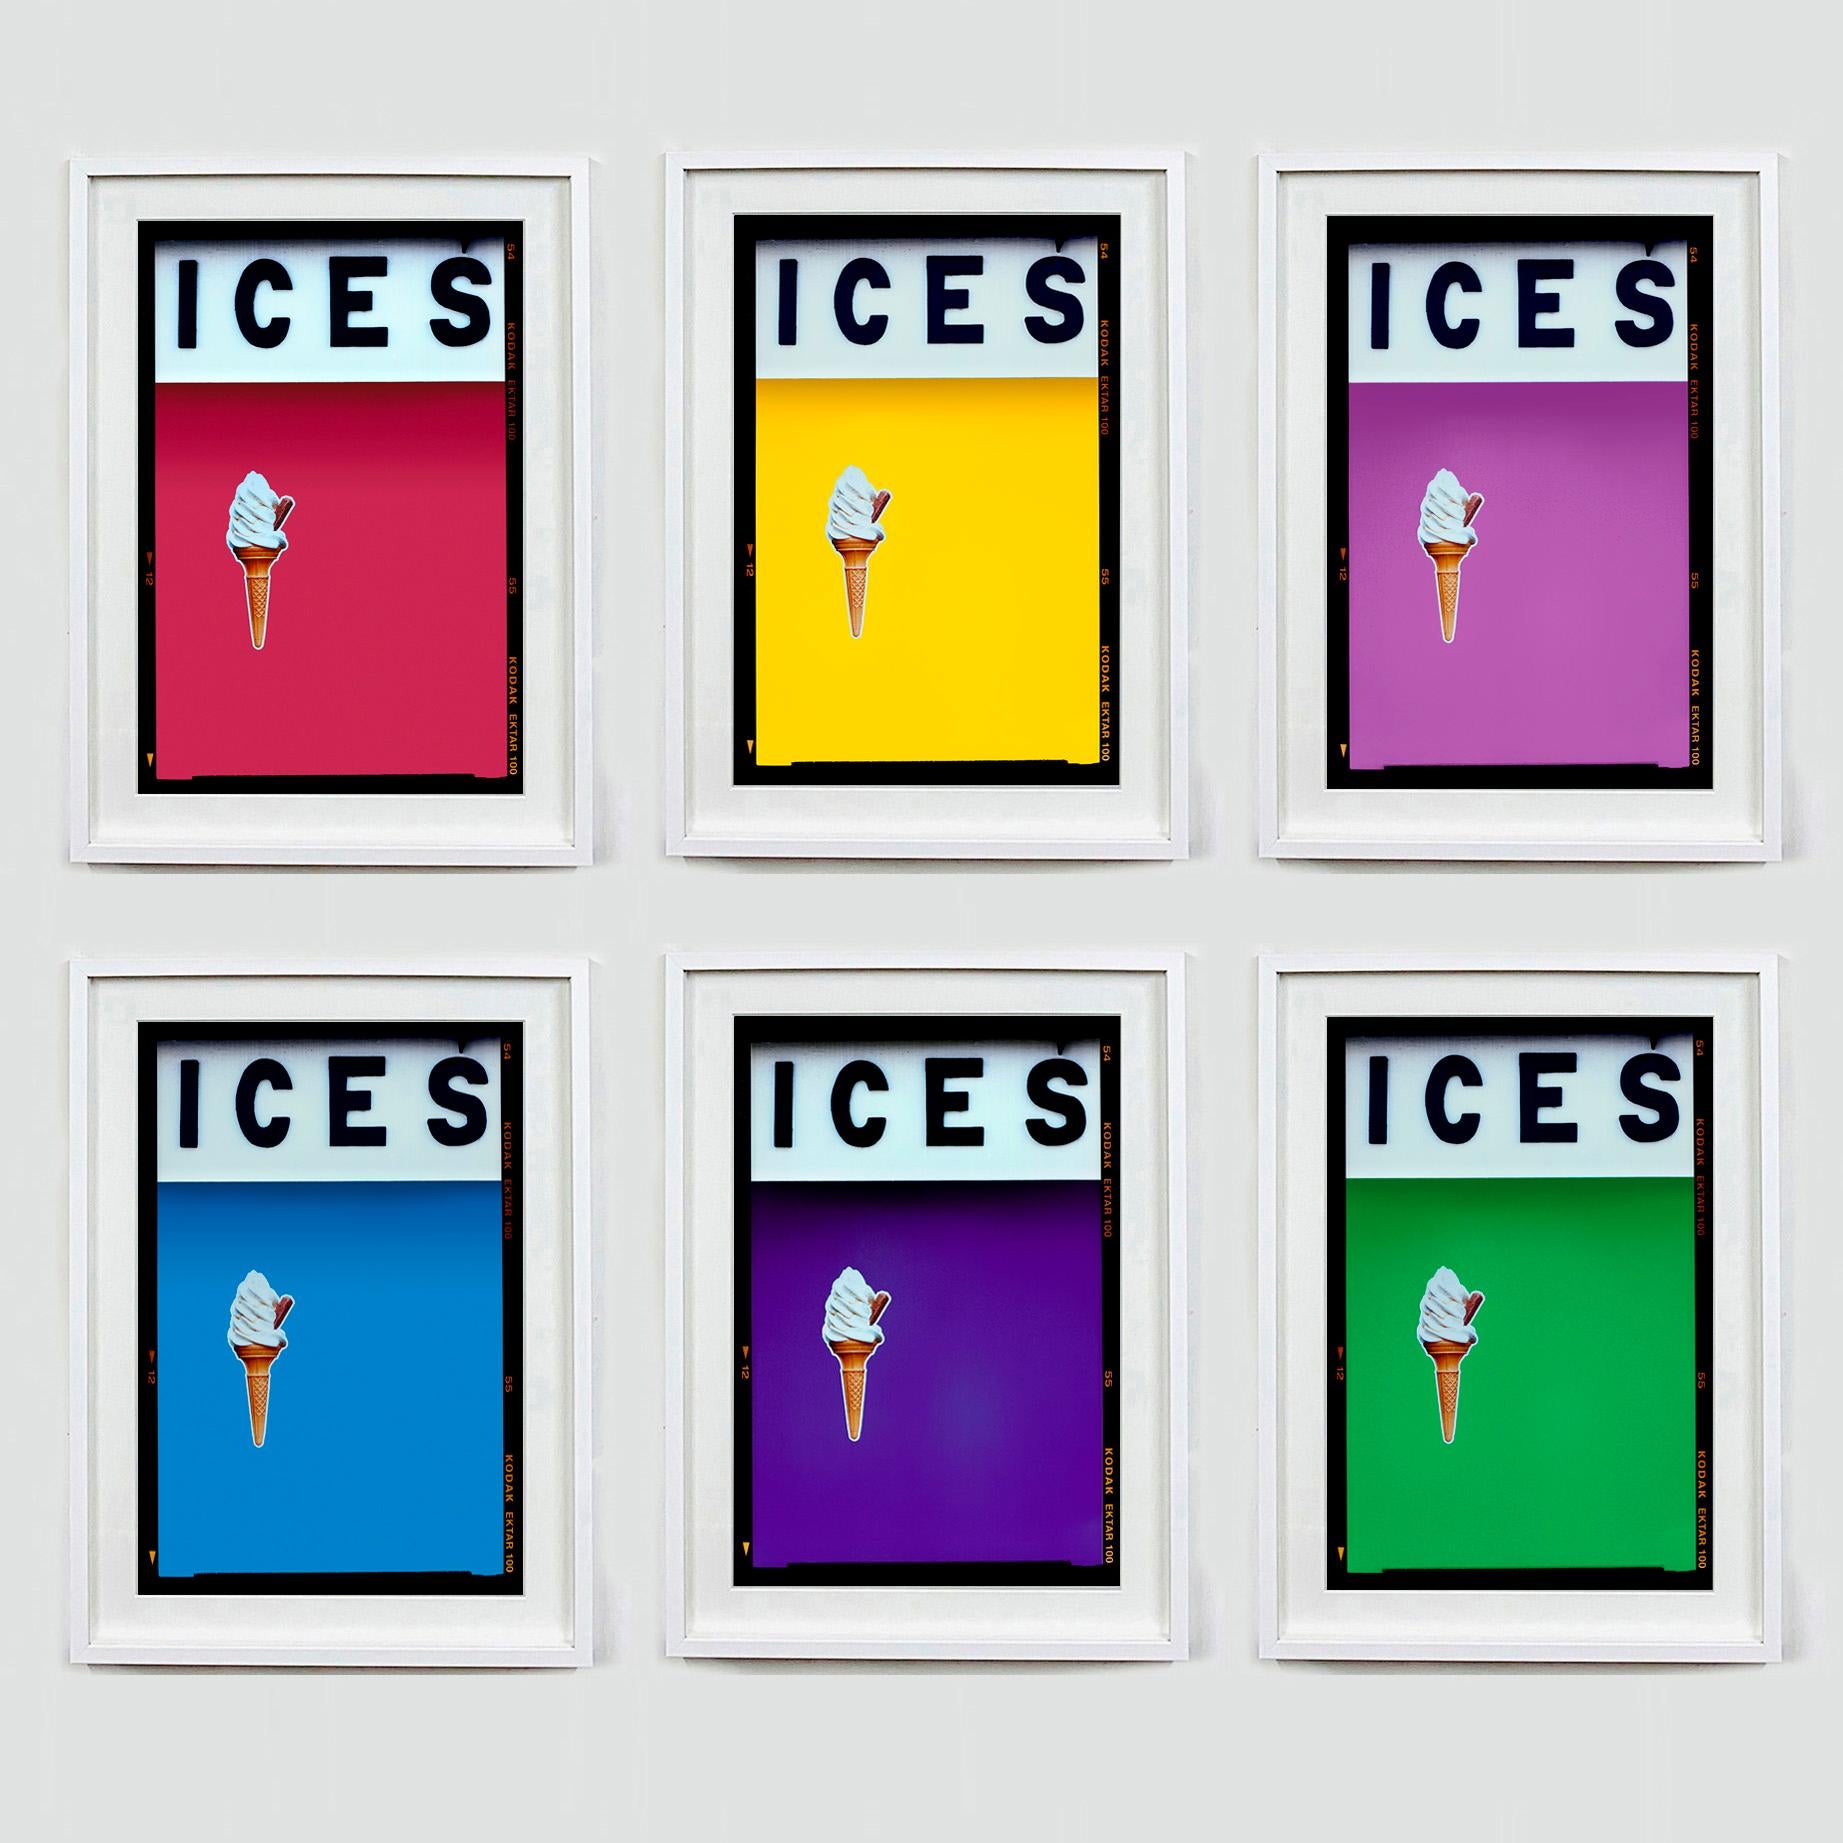 ICES - Sechs gerahmte Kunstwerke, Fotografien von Richard Heeps. Wählen Sie Ihre Farbkombination.

ICES, von Richard Heeps, fotografiert an der britischen Küste am Ende des Sommers 2020. Bei diesem Kunstwerk geht es darum, Erinnerungen an die